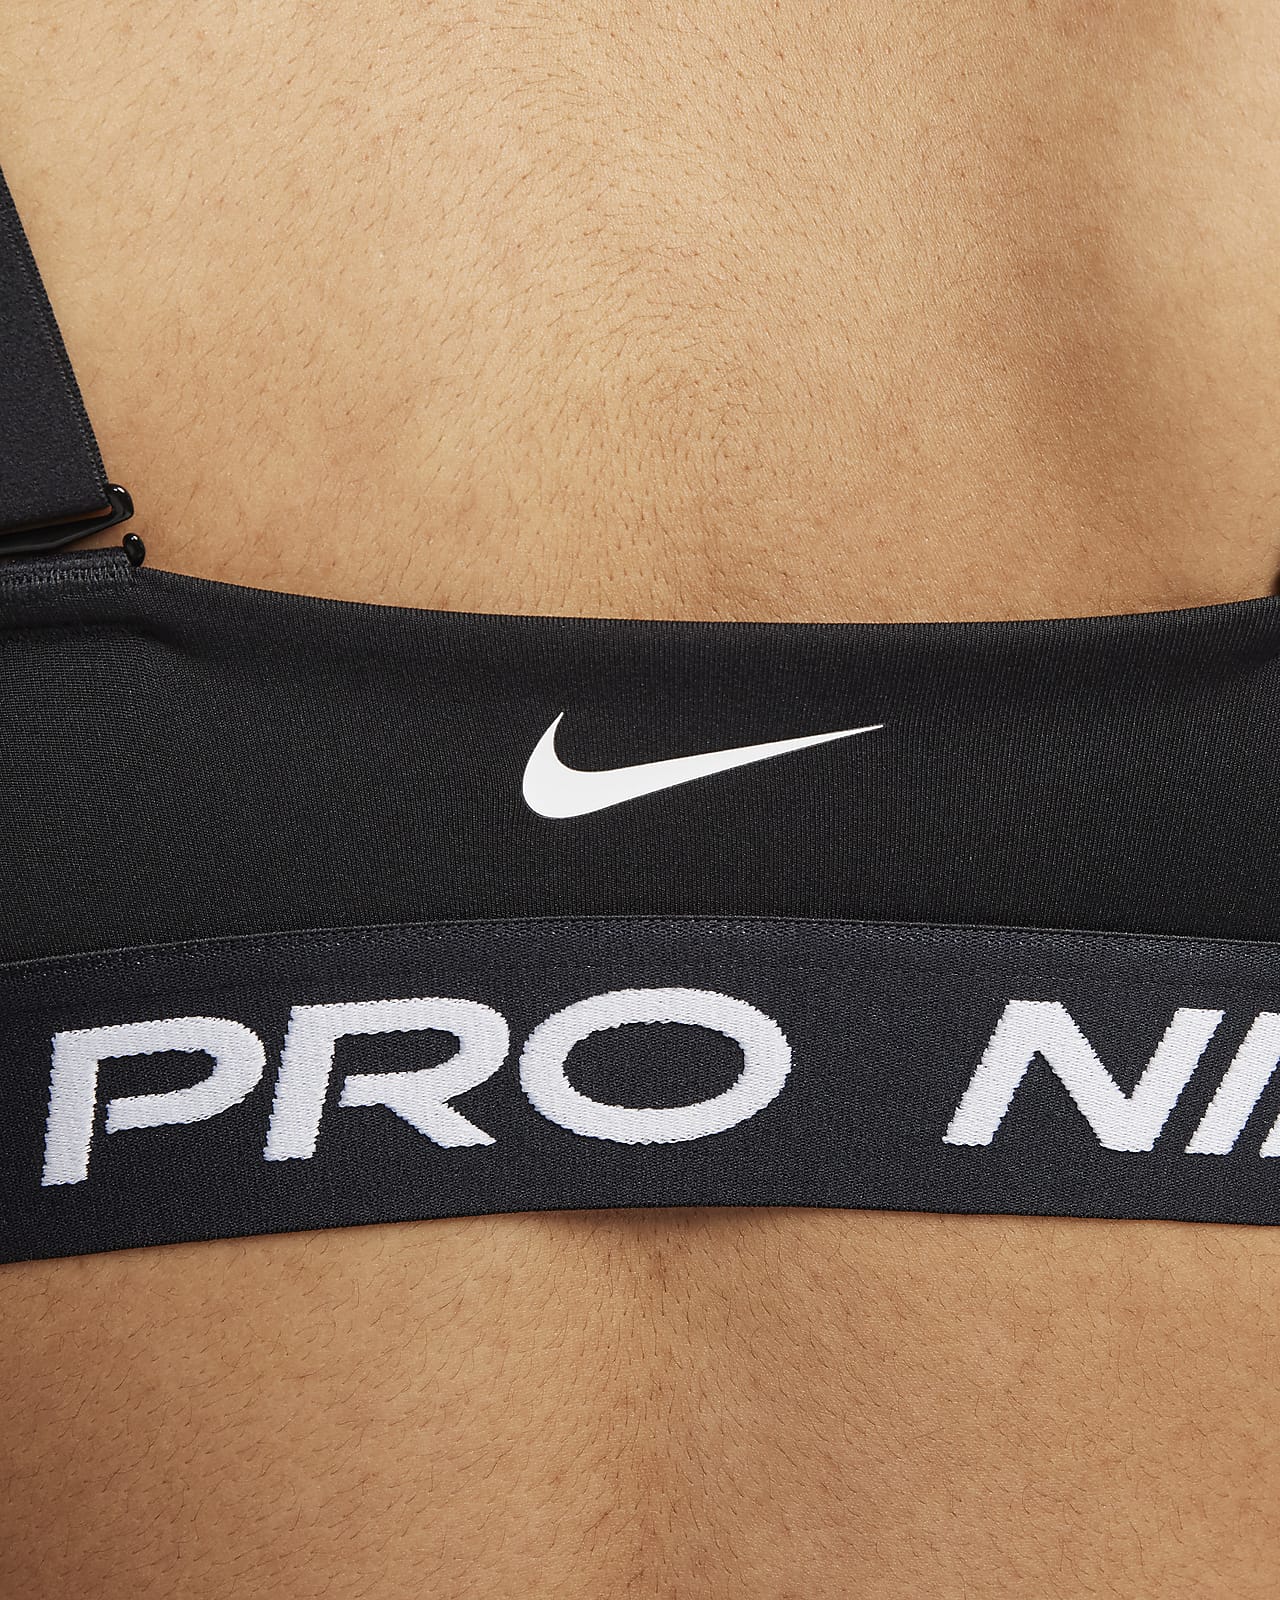 Nike Pro Indy Light Support Sports Bra 844233-010 Size L